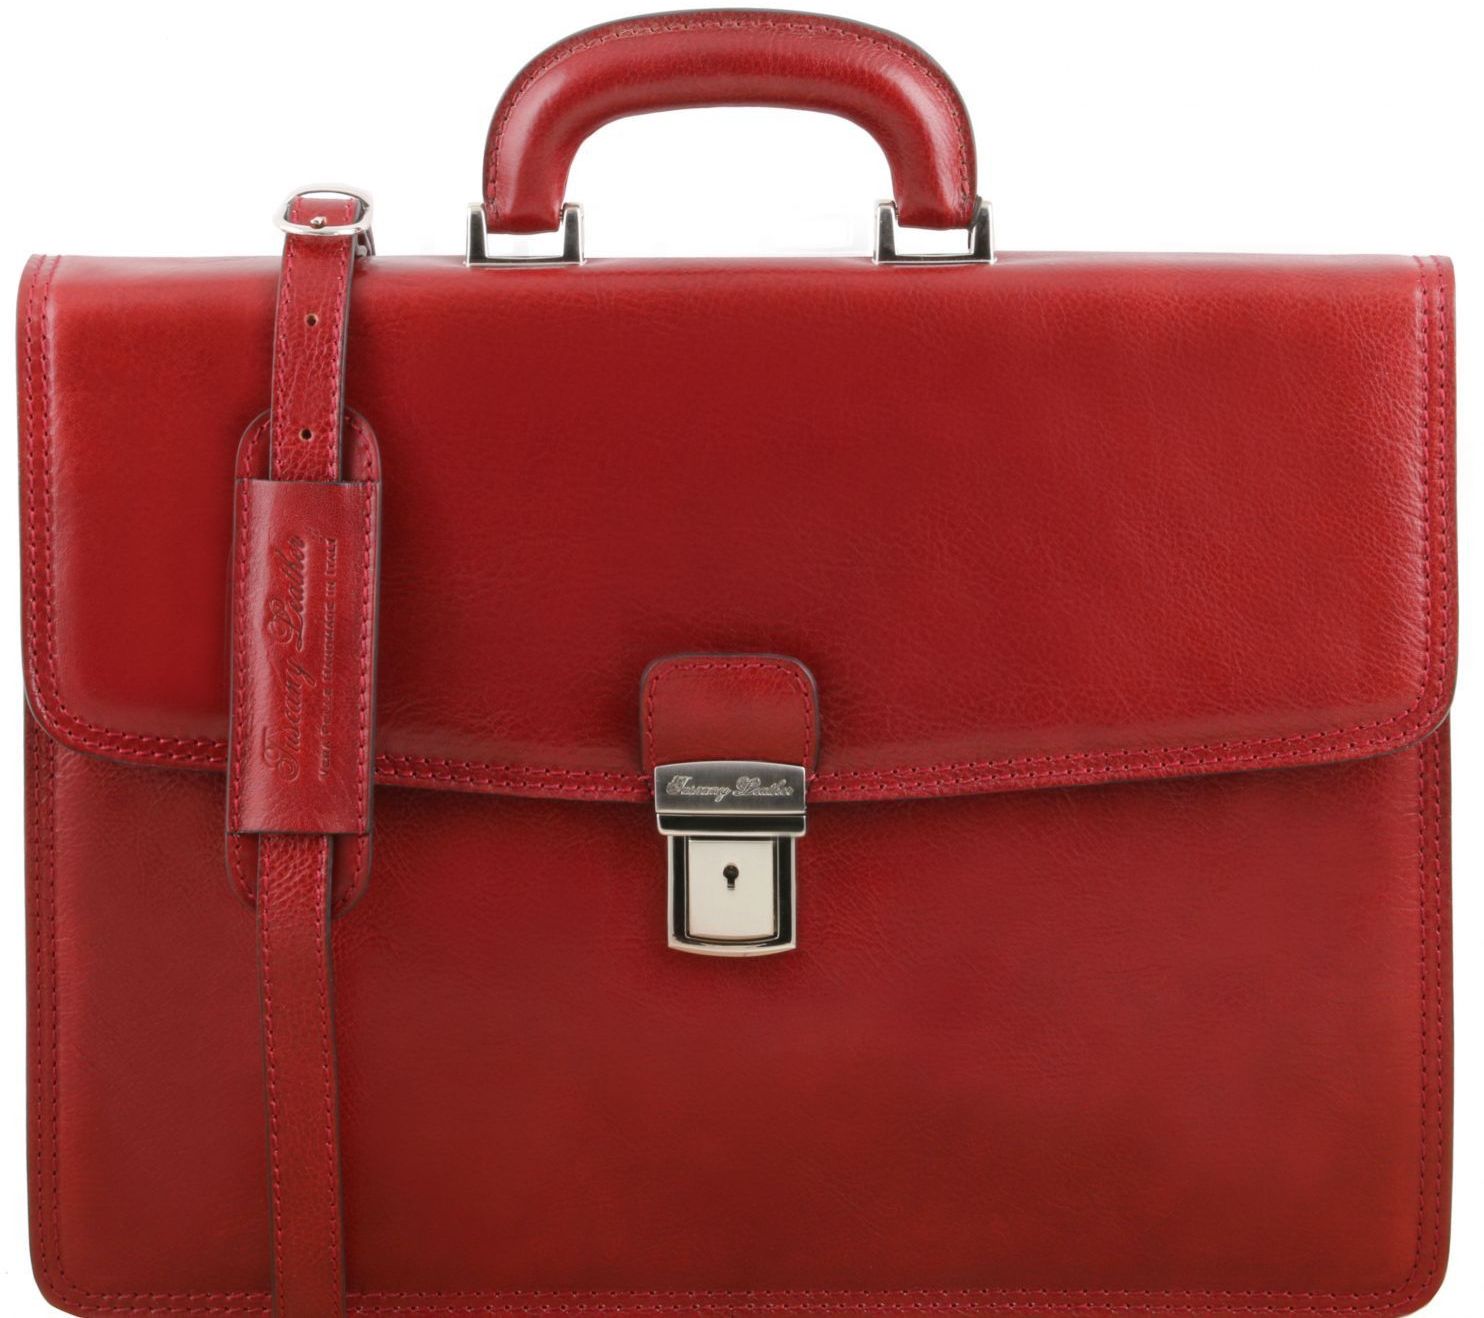 Ανδρική Επαγγελματική Τσάντα Δερμάτινη Amalfi Κόκκινο Tuscany Leather